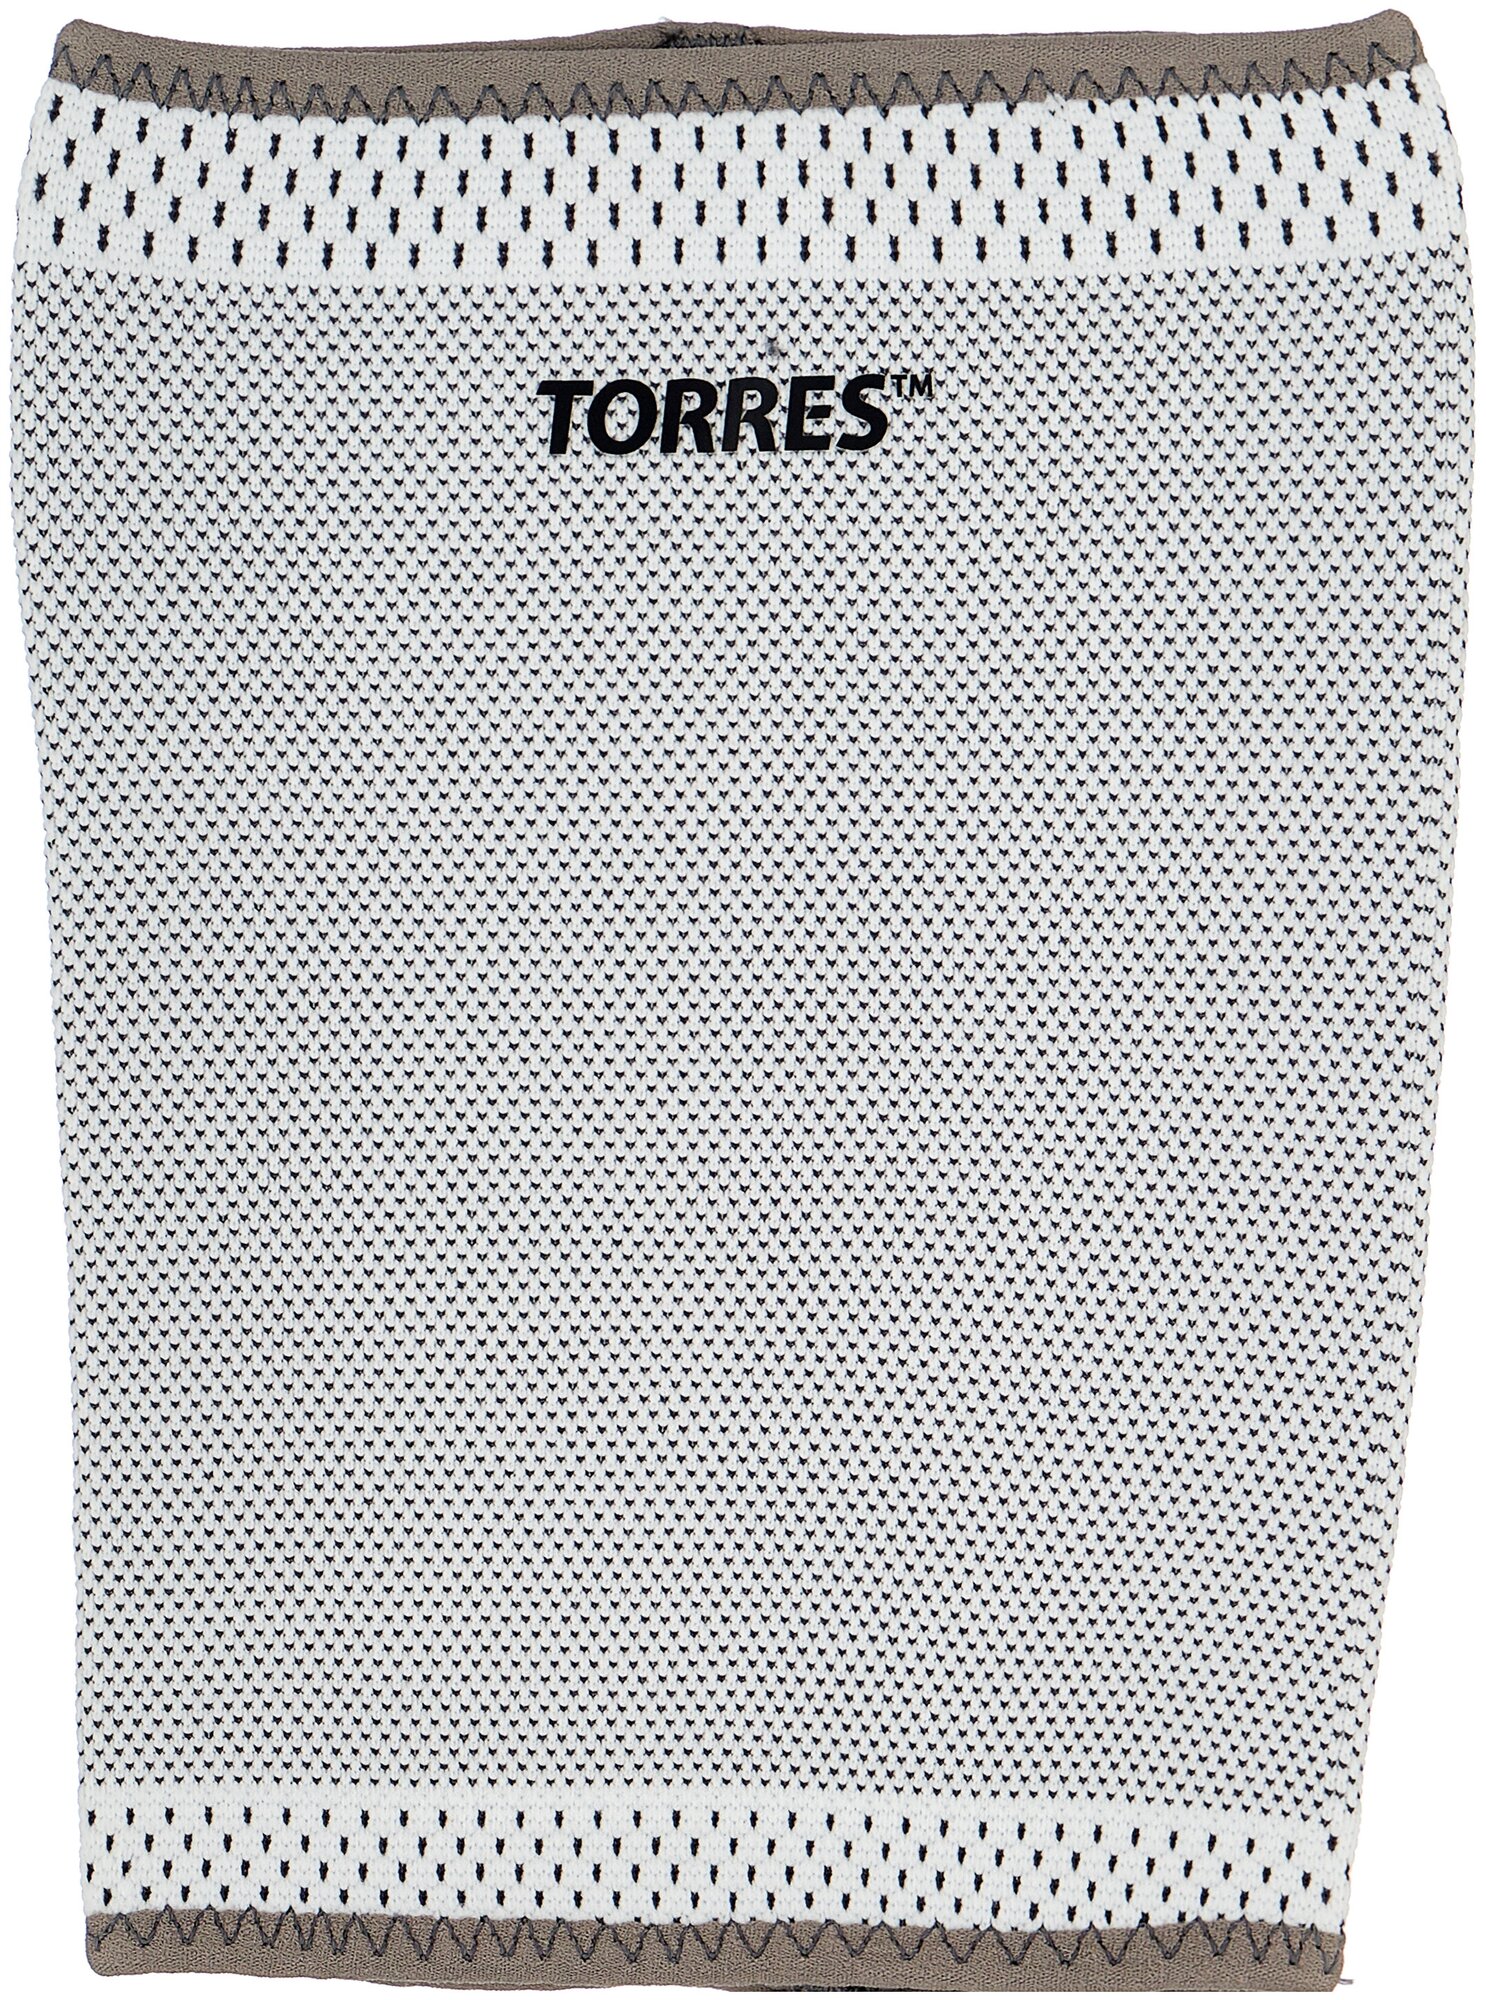 Суппорт бедра TORRES PRL11011XL, размер XL